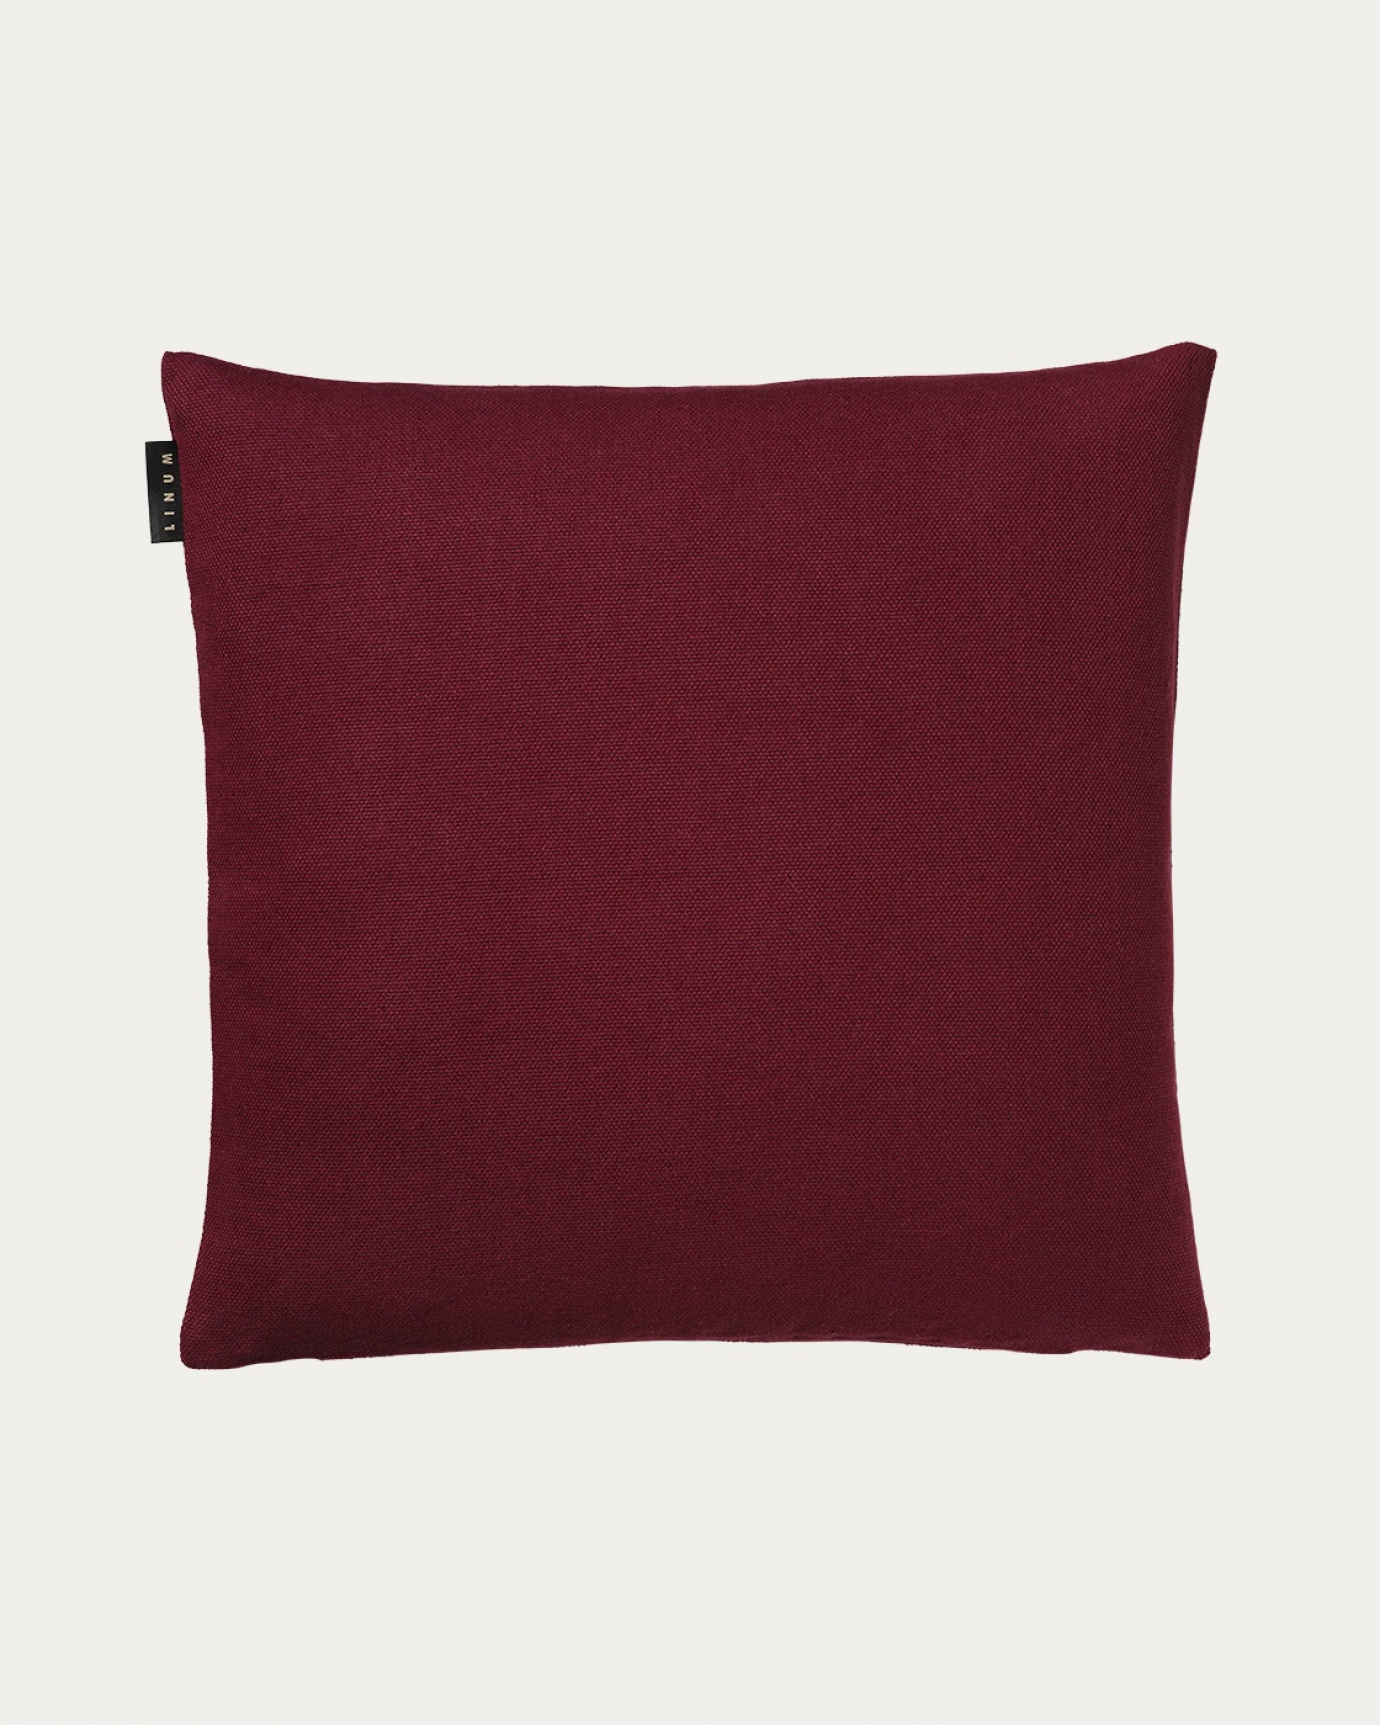 Produktbild burgundyröd PEPPER kuddfodral av mjuk bomull från LINUM DESIGN. Lätt att tvätta och hållbar genom generationer. Storlek 50x50 cm.